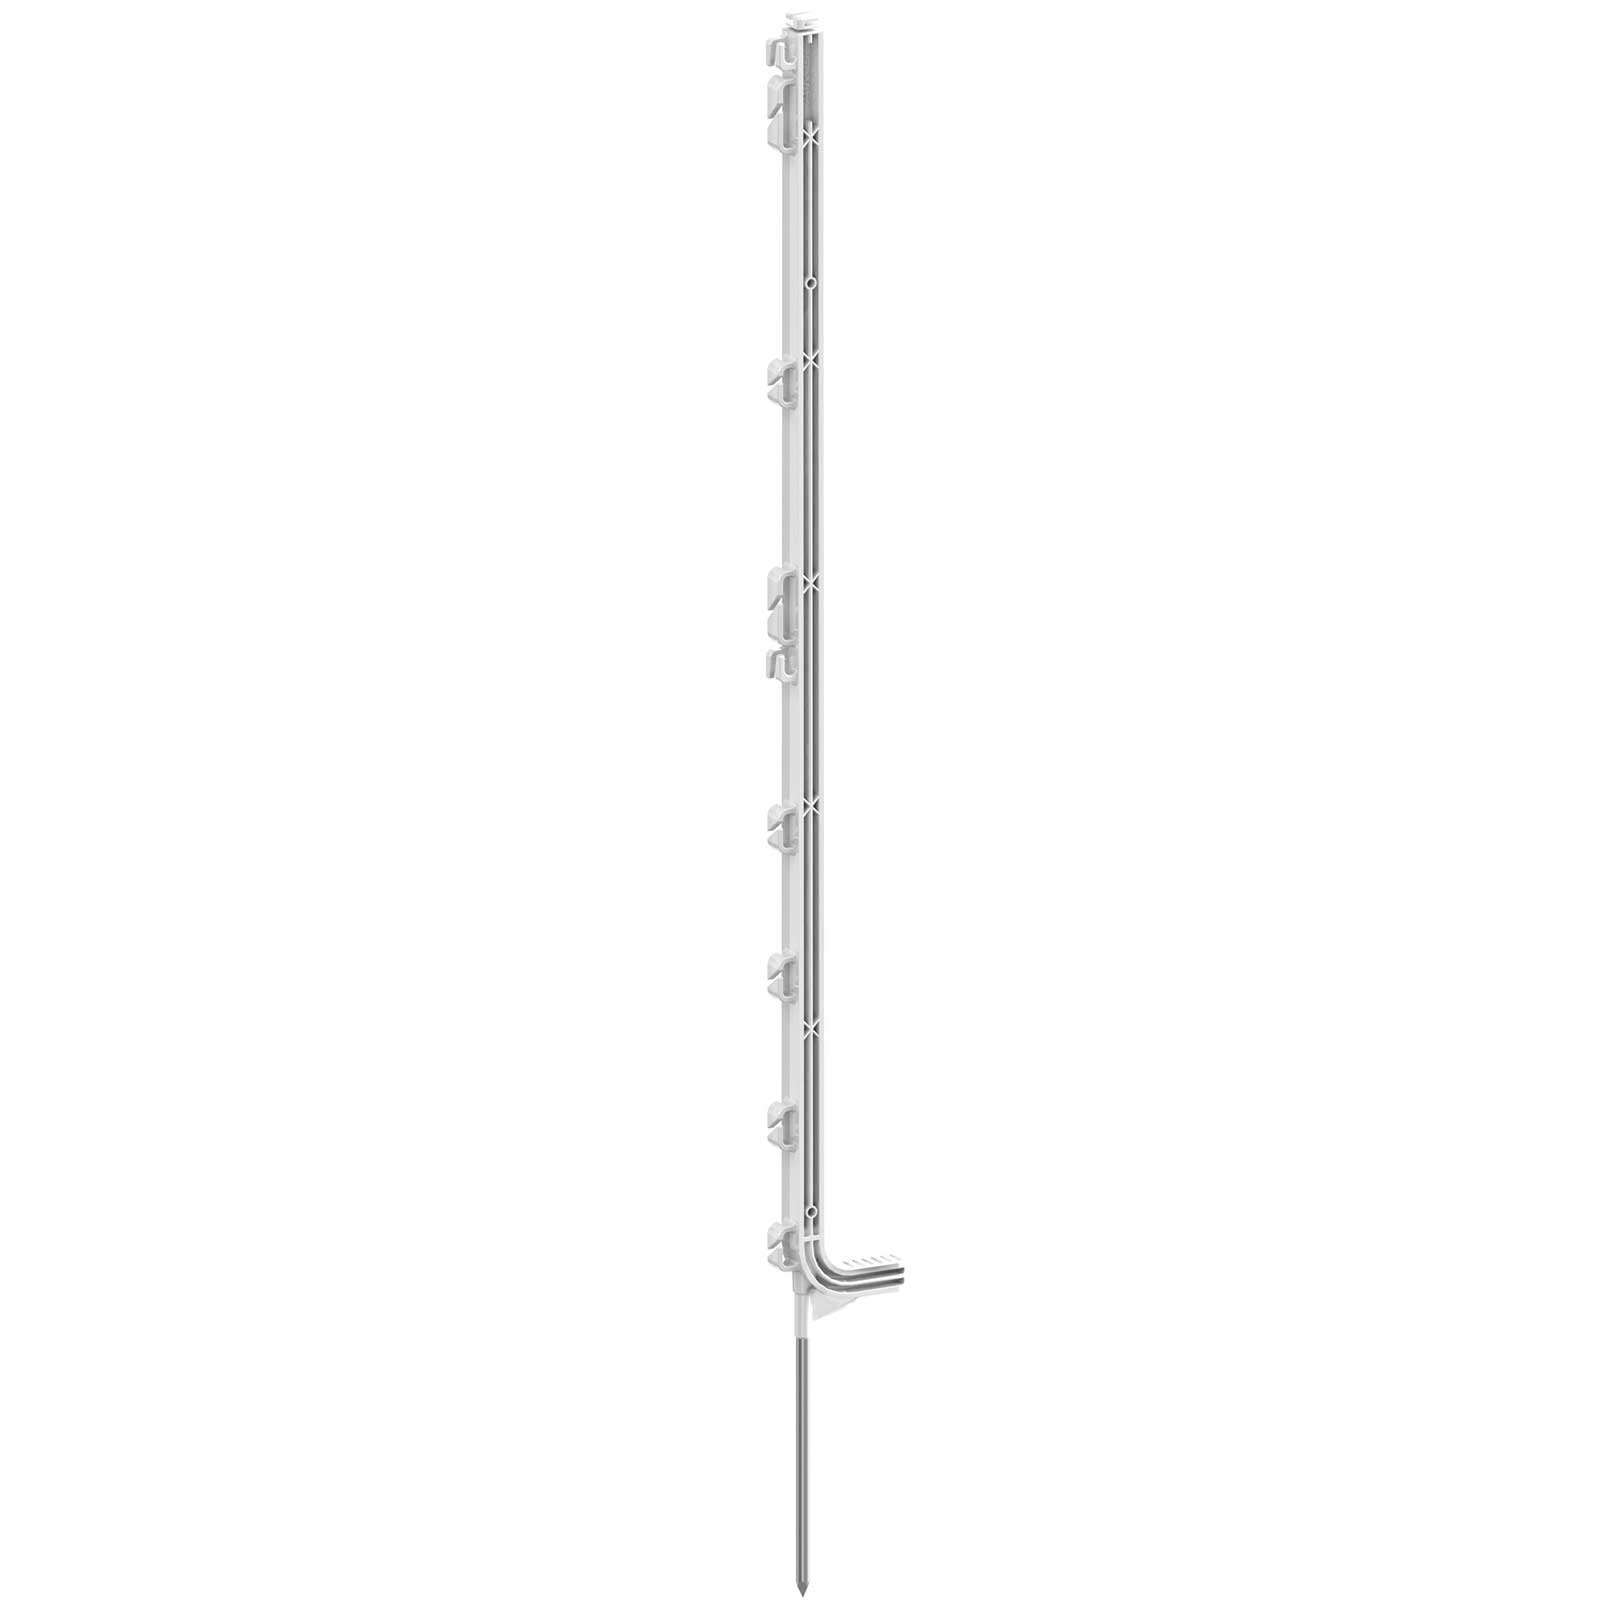 Műanyag villanypásztor karó Prémium 107 cm, egy taposó, fehér (5 darab)